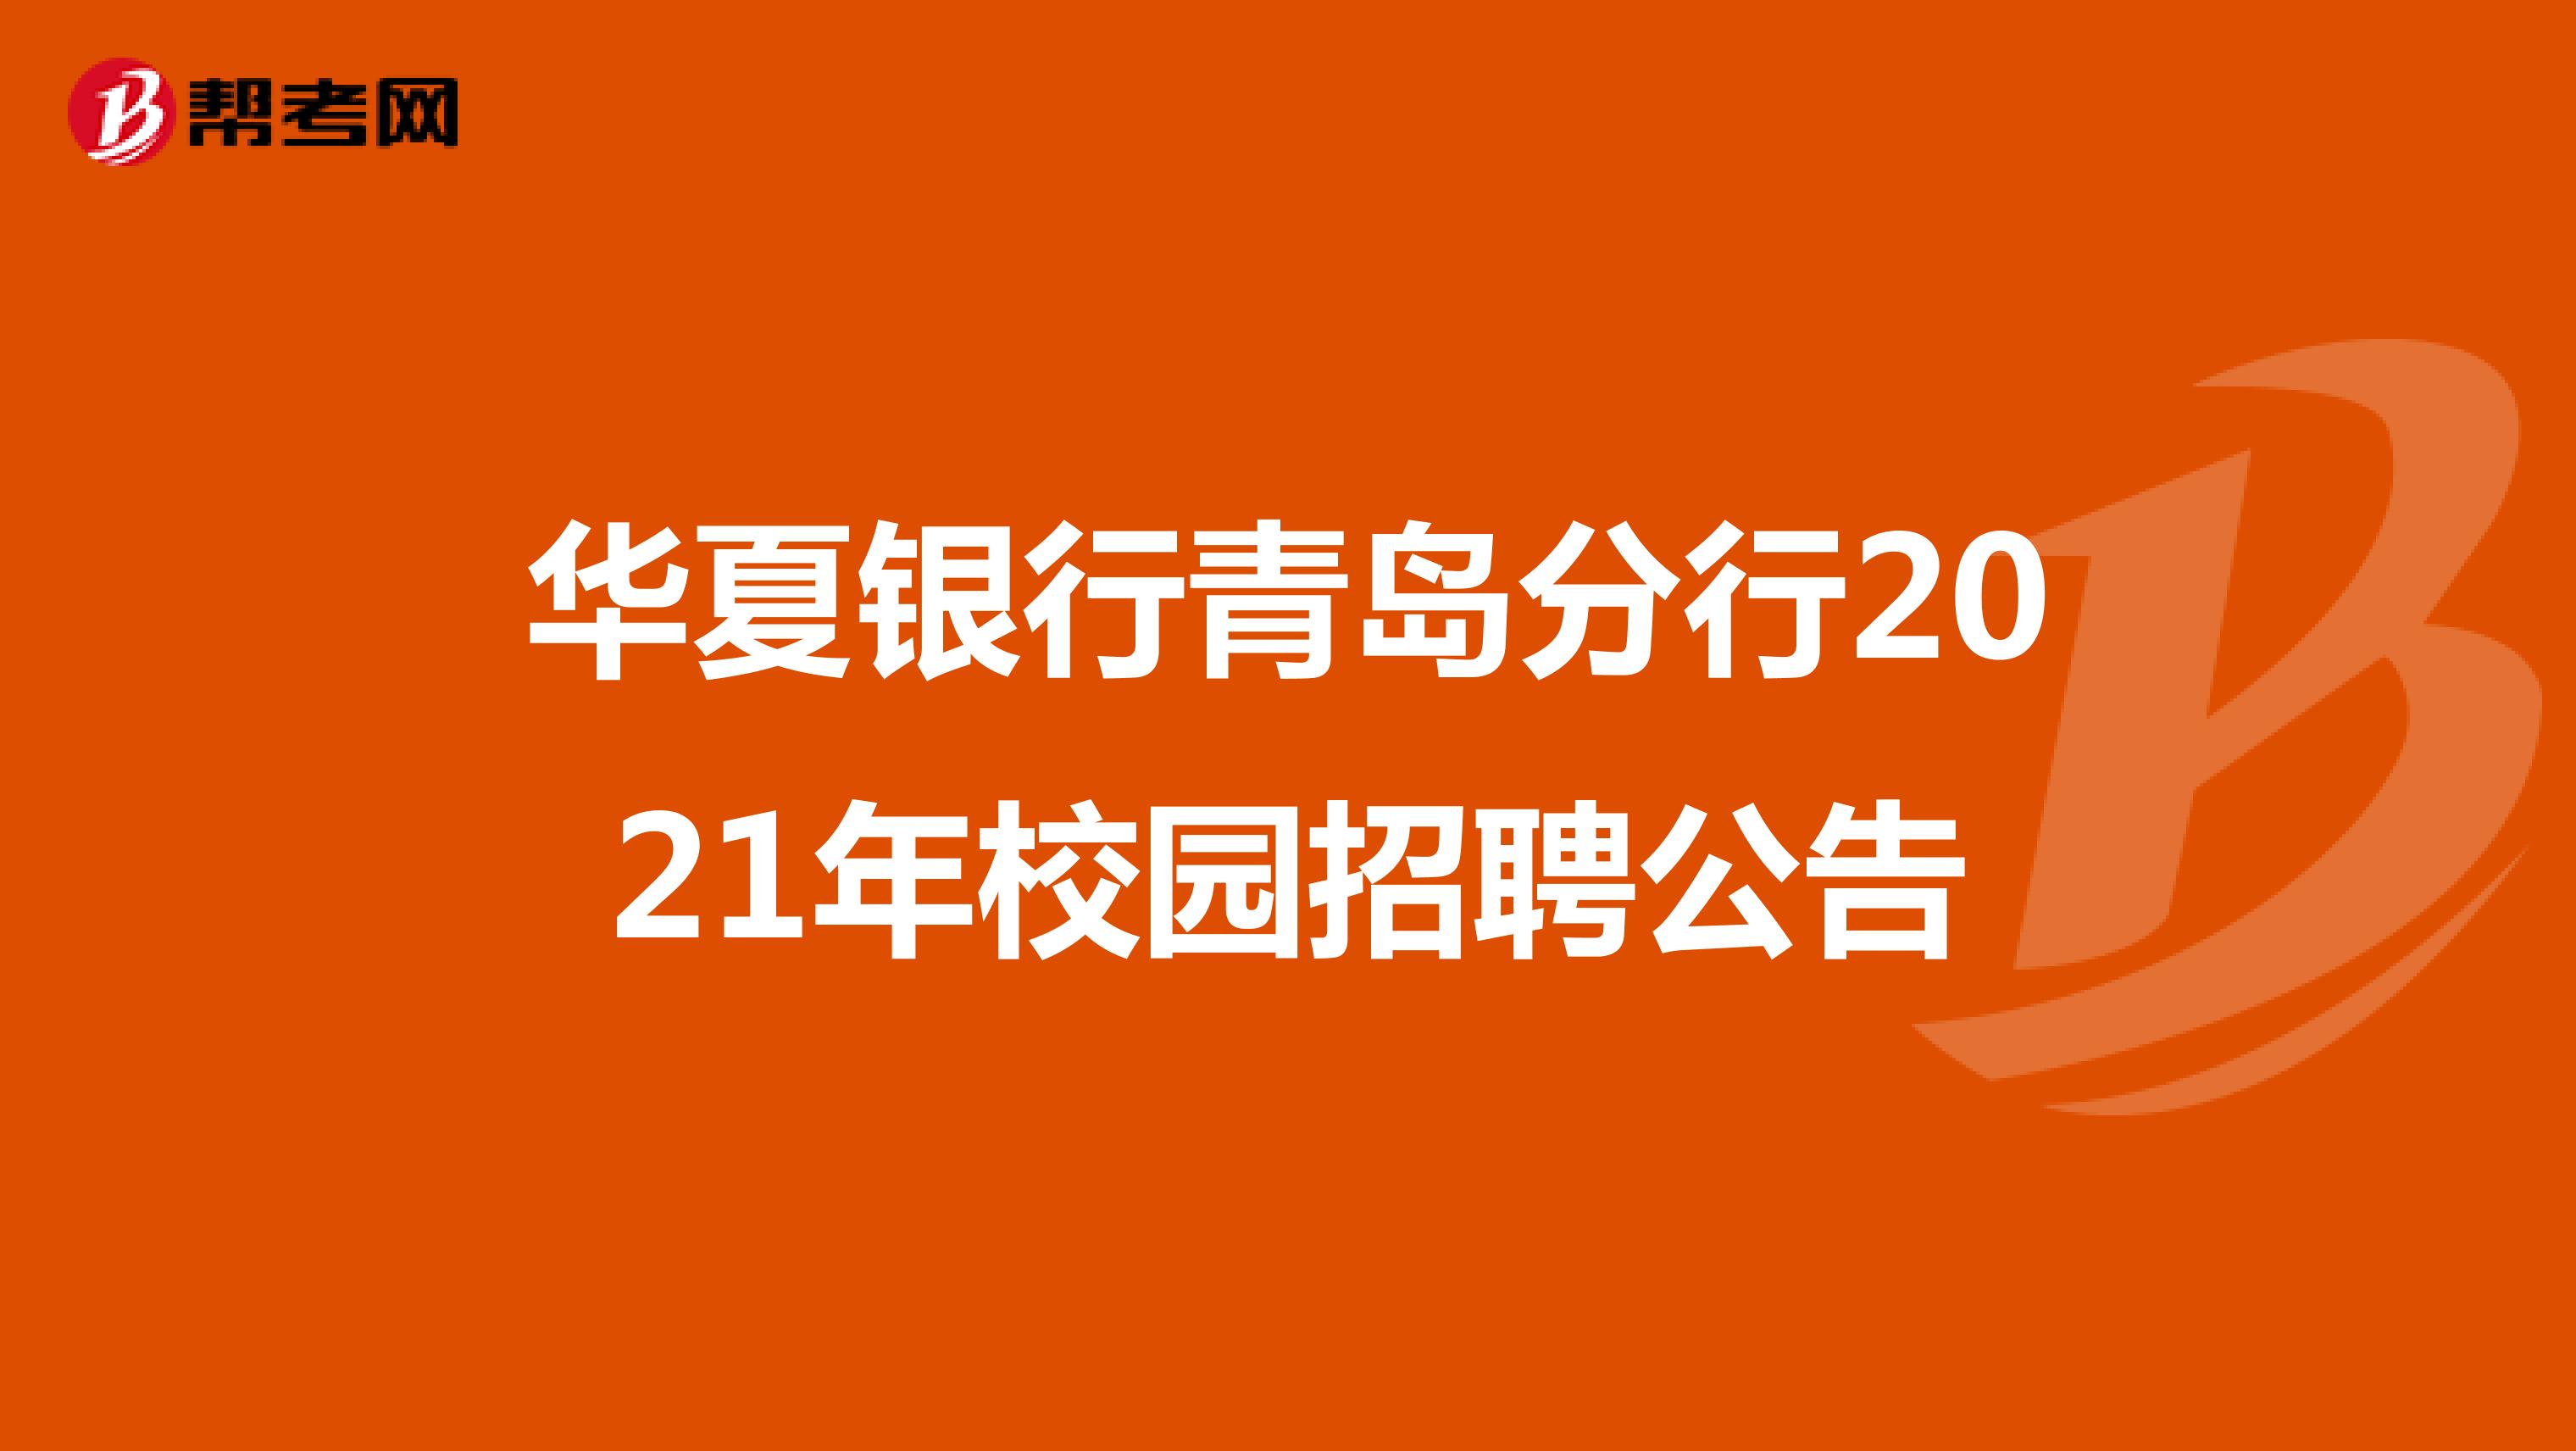 华夏银行青岛分行2021年校园招聘公告